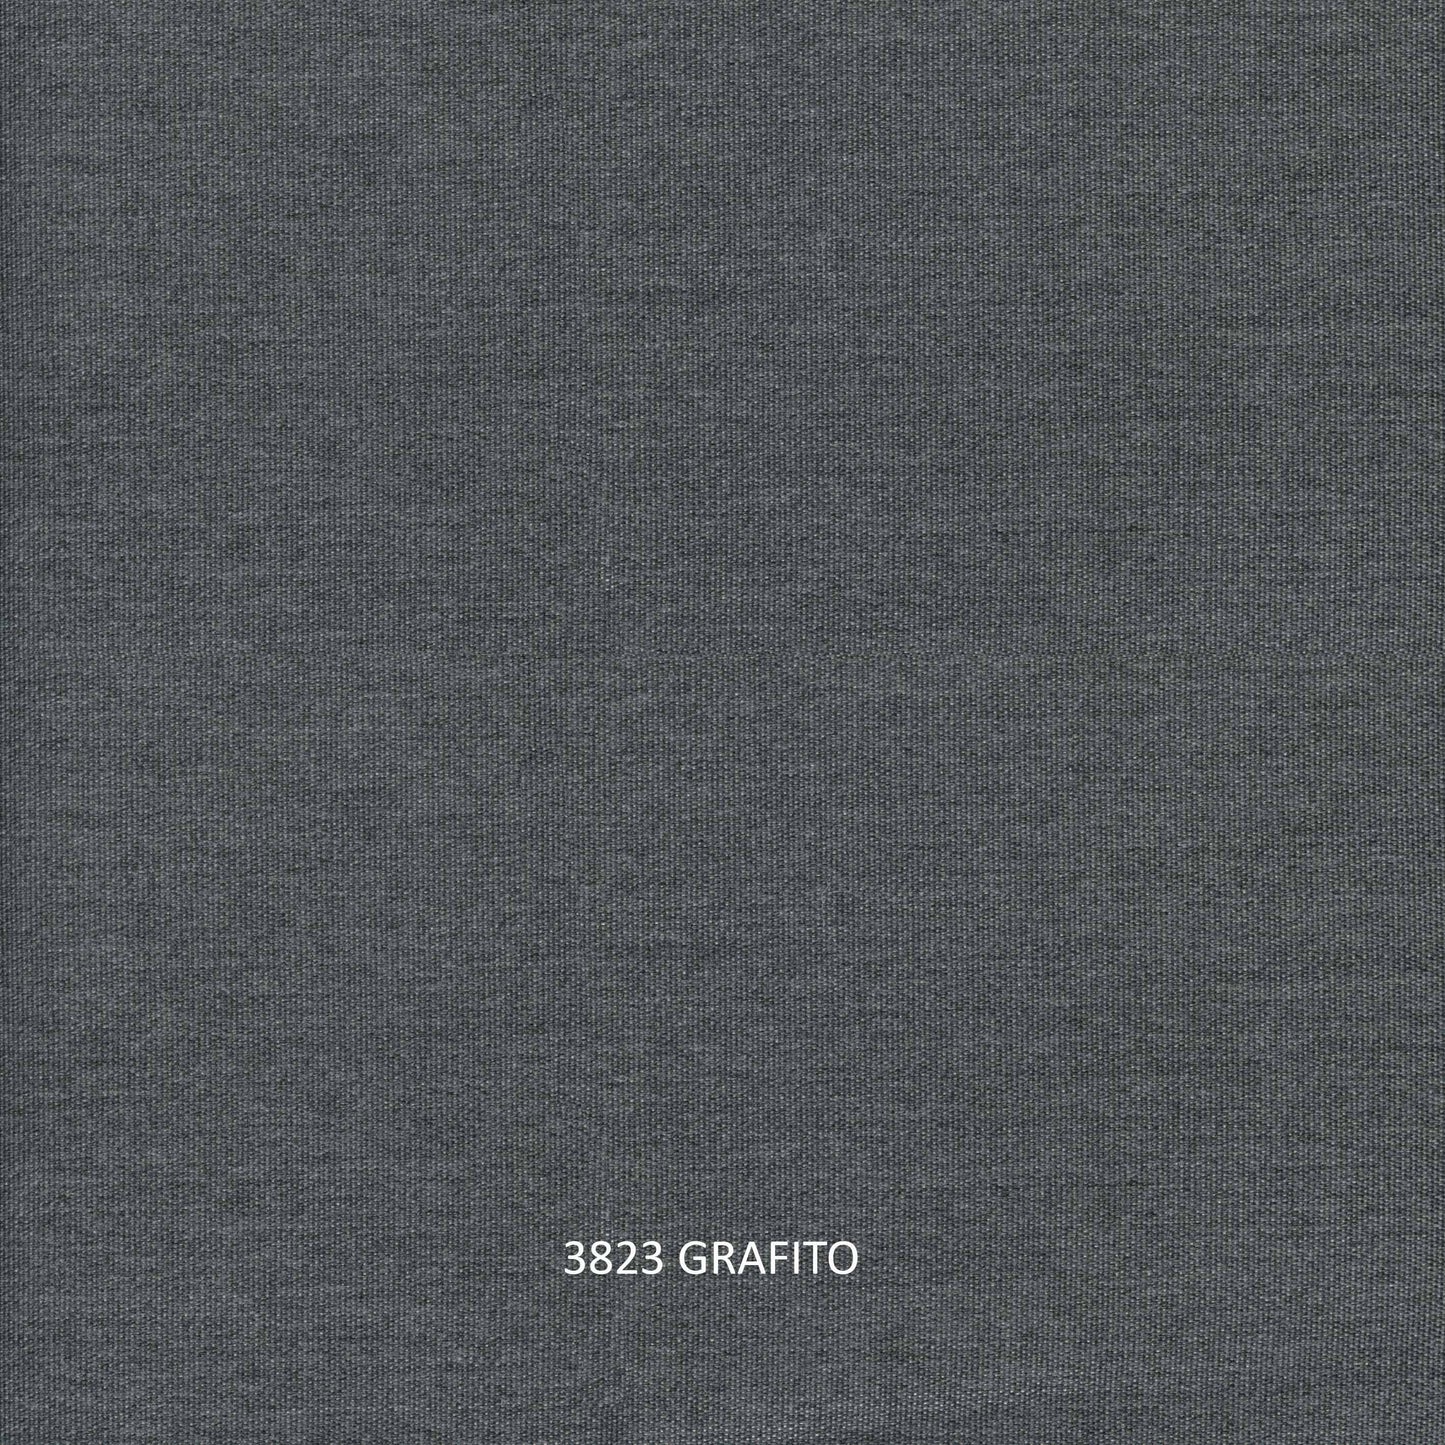 Kitt Left Love Seat - PadioLiving - Kitt Left Love Seat - Outdoor Love Seat - Dark Grey 21mm Strap / Metal-Grafito(£1317) - PadioLiving